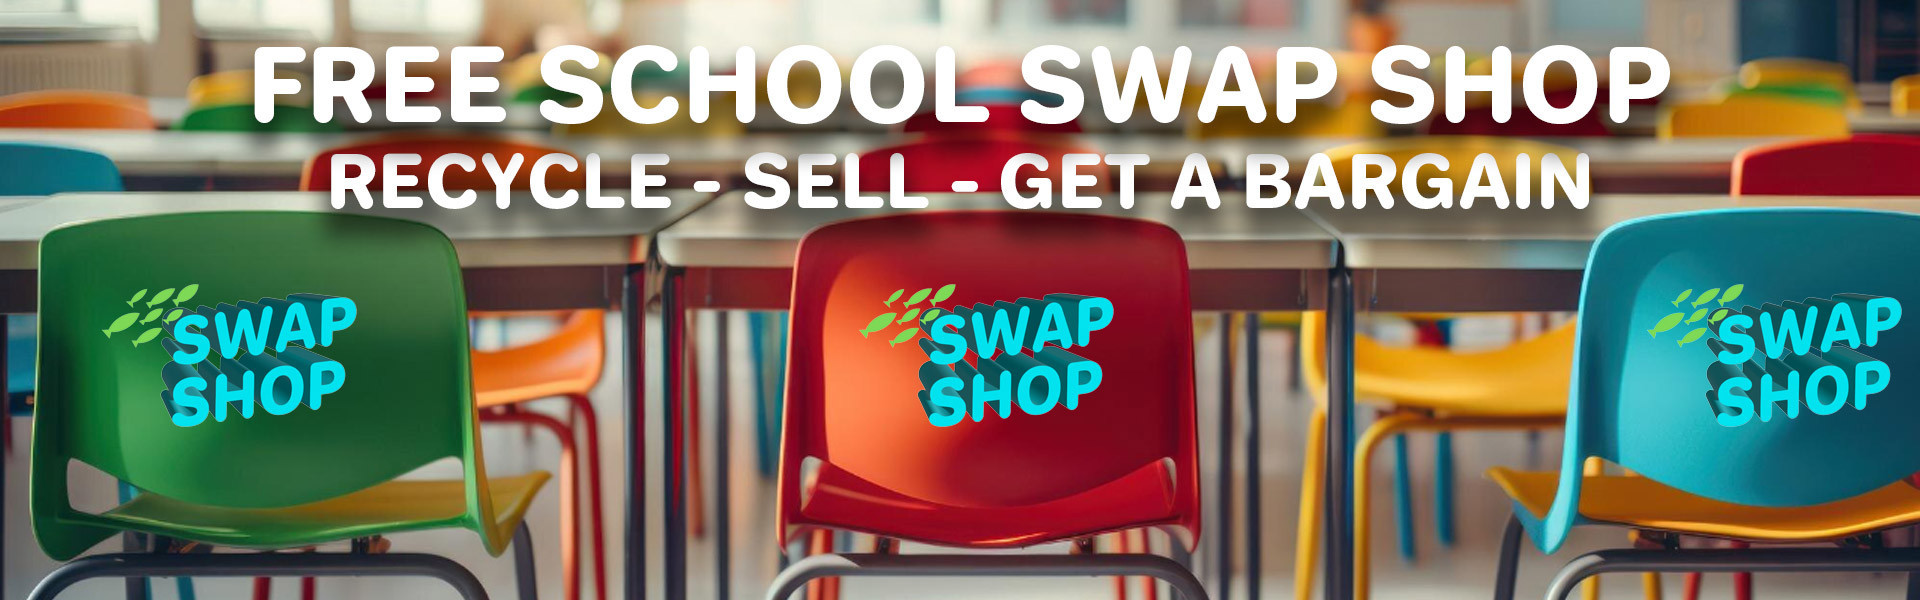 School Swap Shop